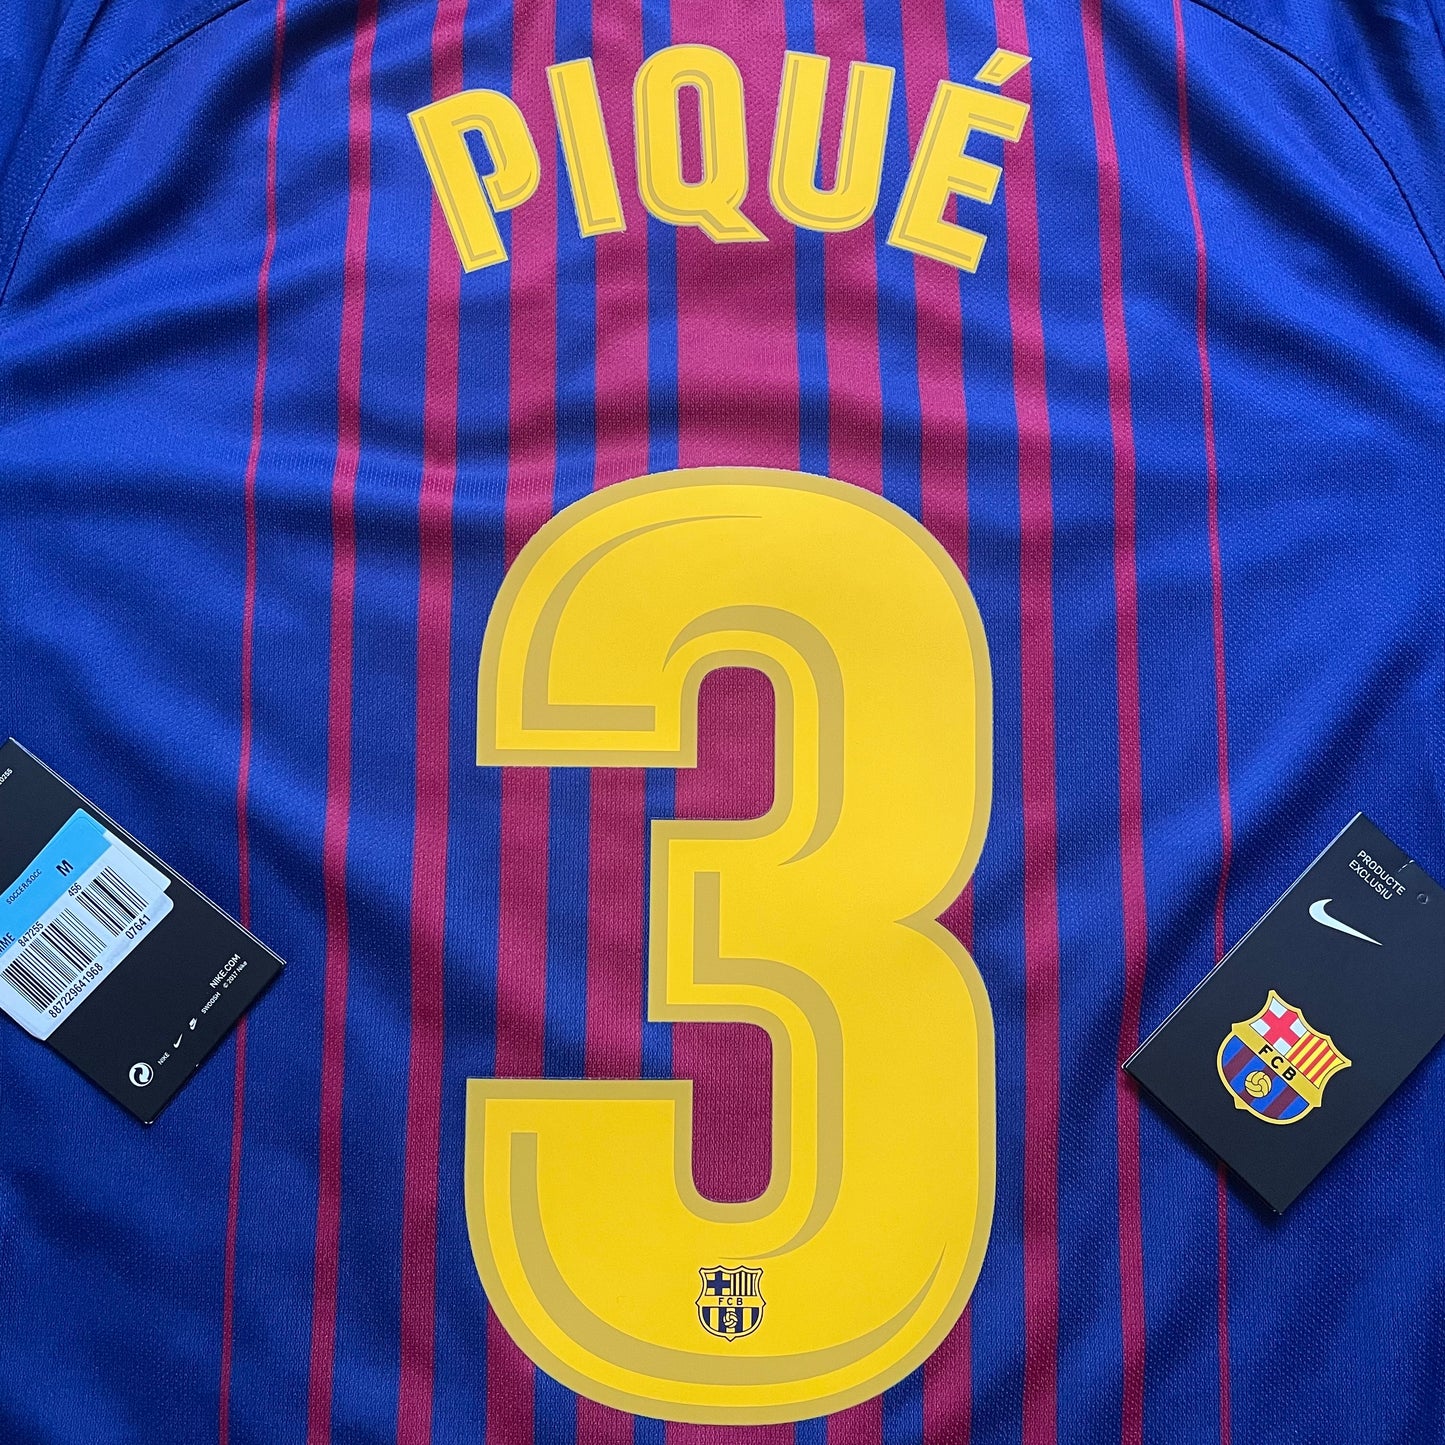 <tc>2017-2018 FC Barcelona camiseta local #3 Piqué (M, XL)</tc>